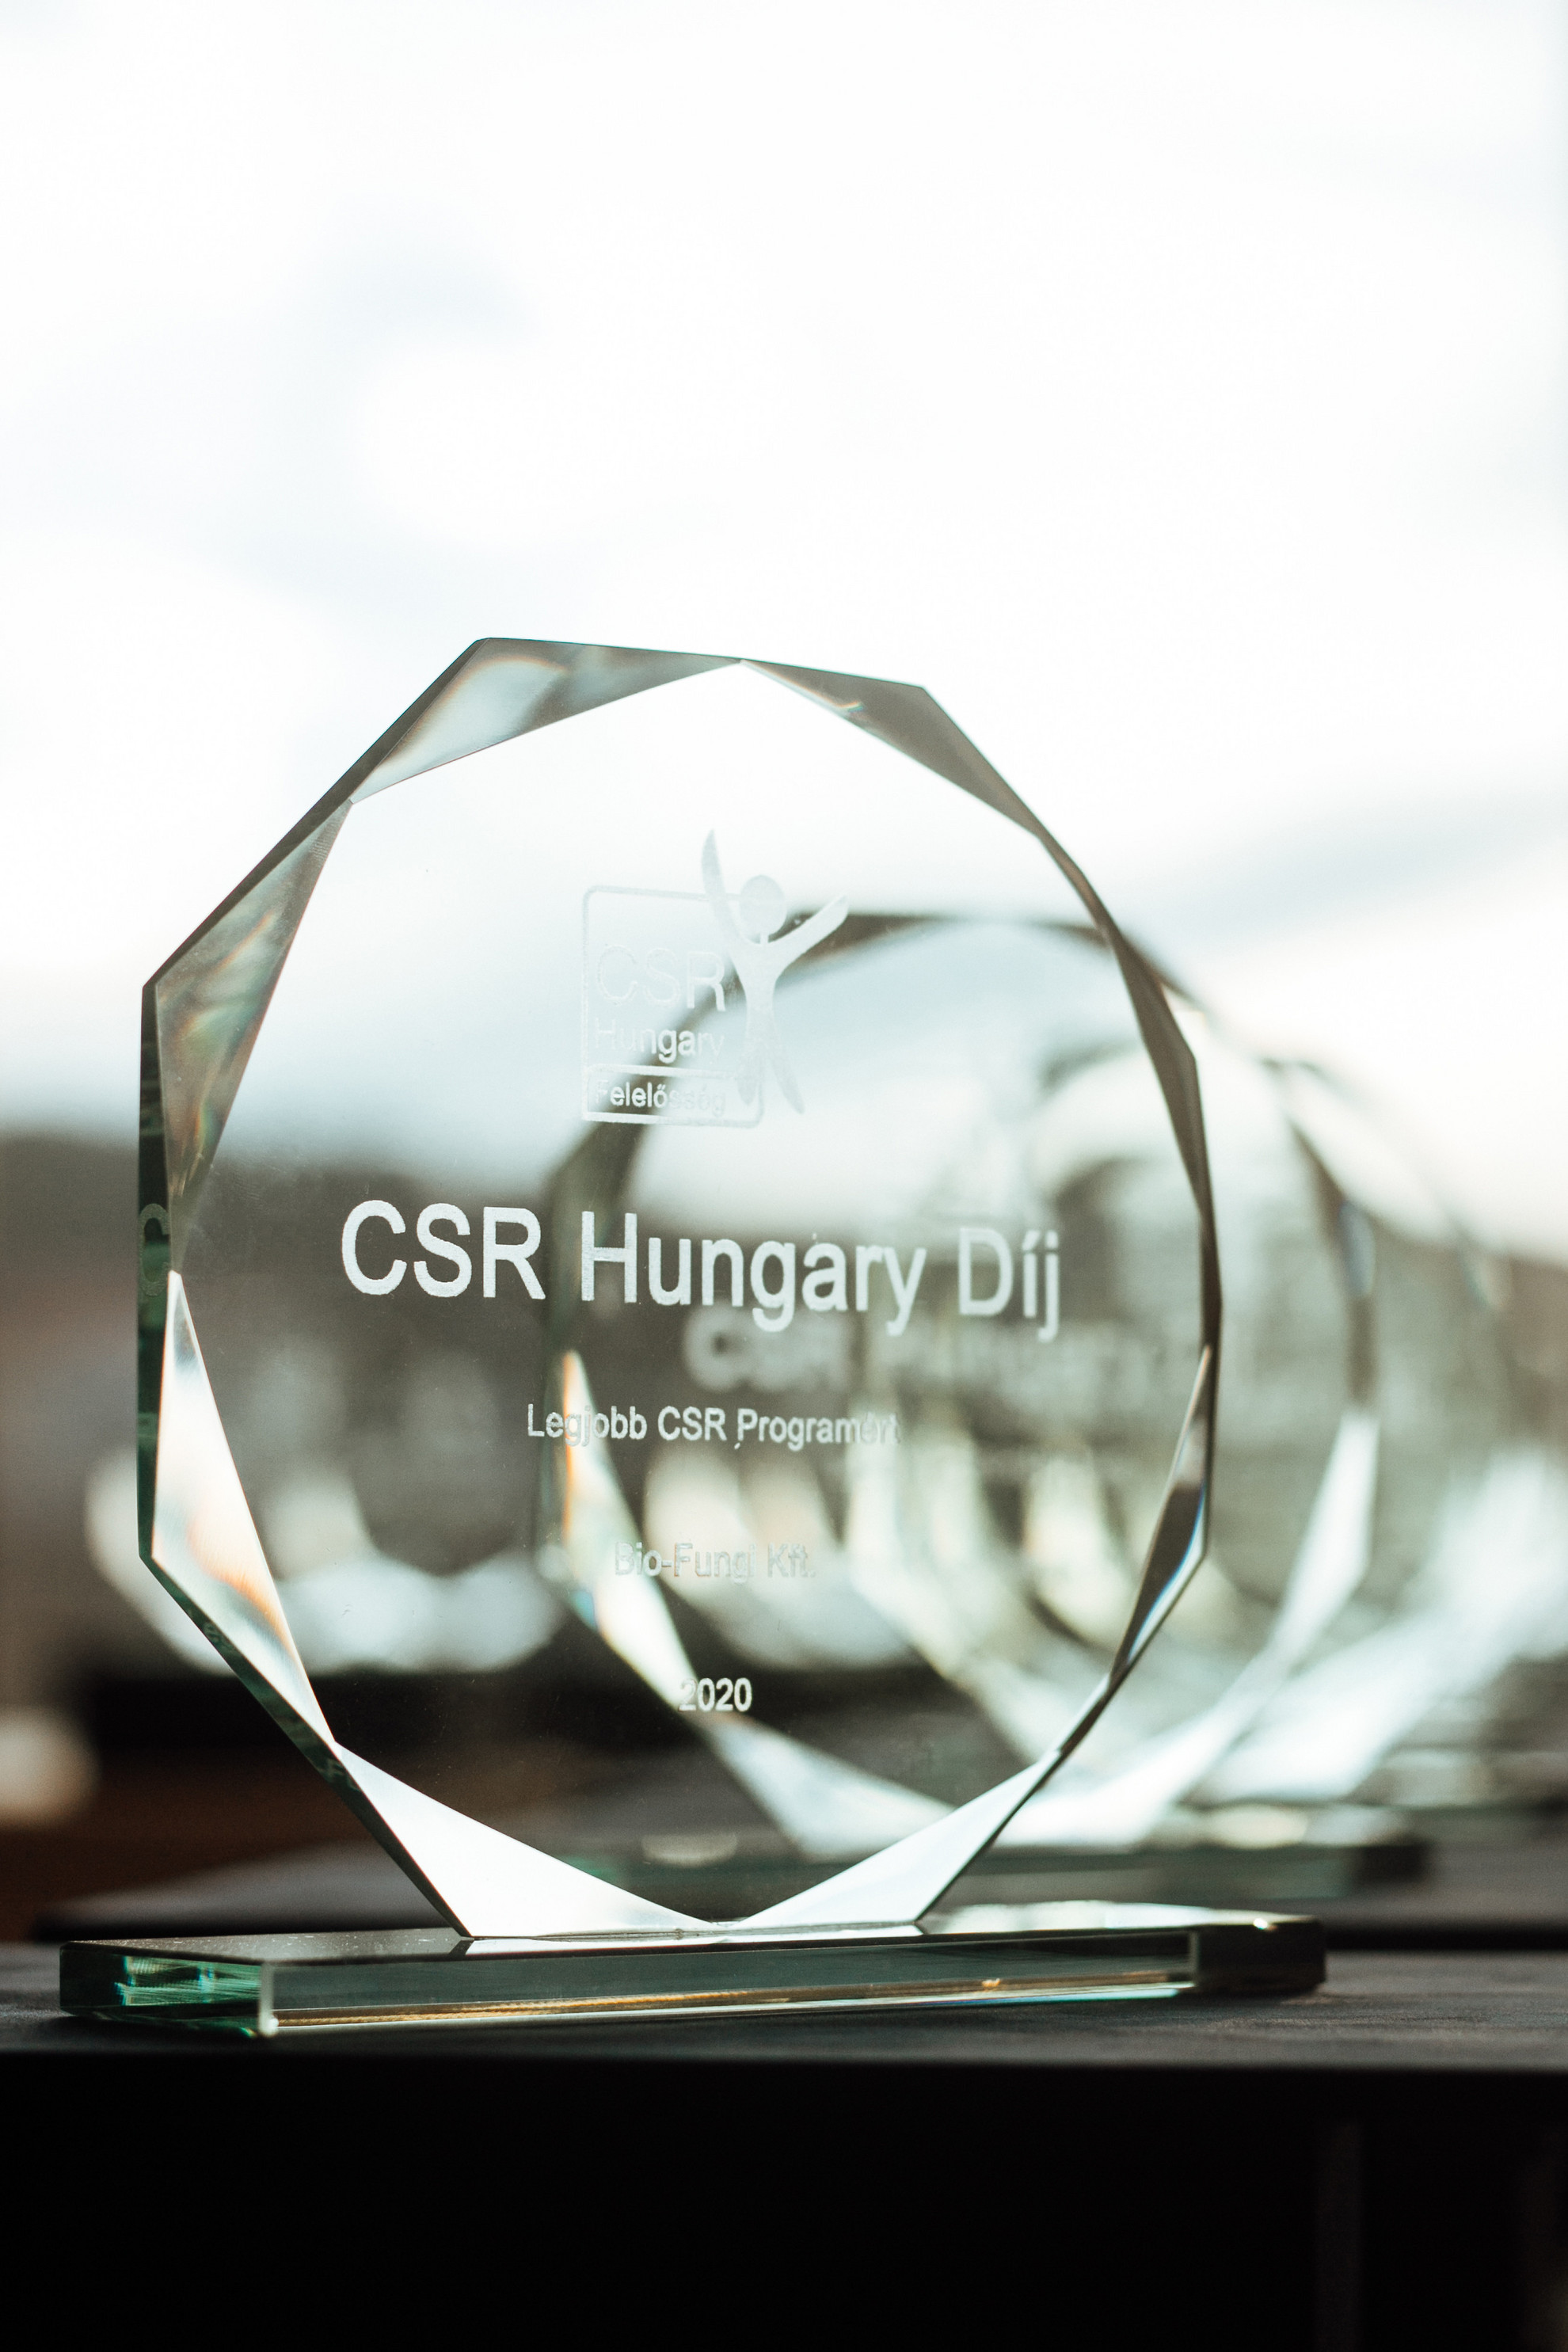 A Mészáros Csoport High-Tech Suli Programjával elnyerte a „Legjobb CSR Programért” díjat és az ezzel járó védjegyhasználatot az idei CSR Hungary Díj pályázatán